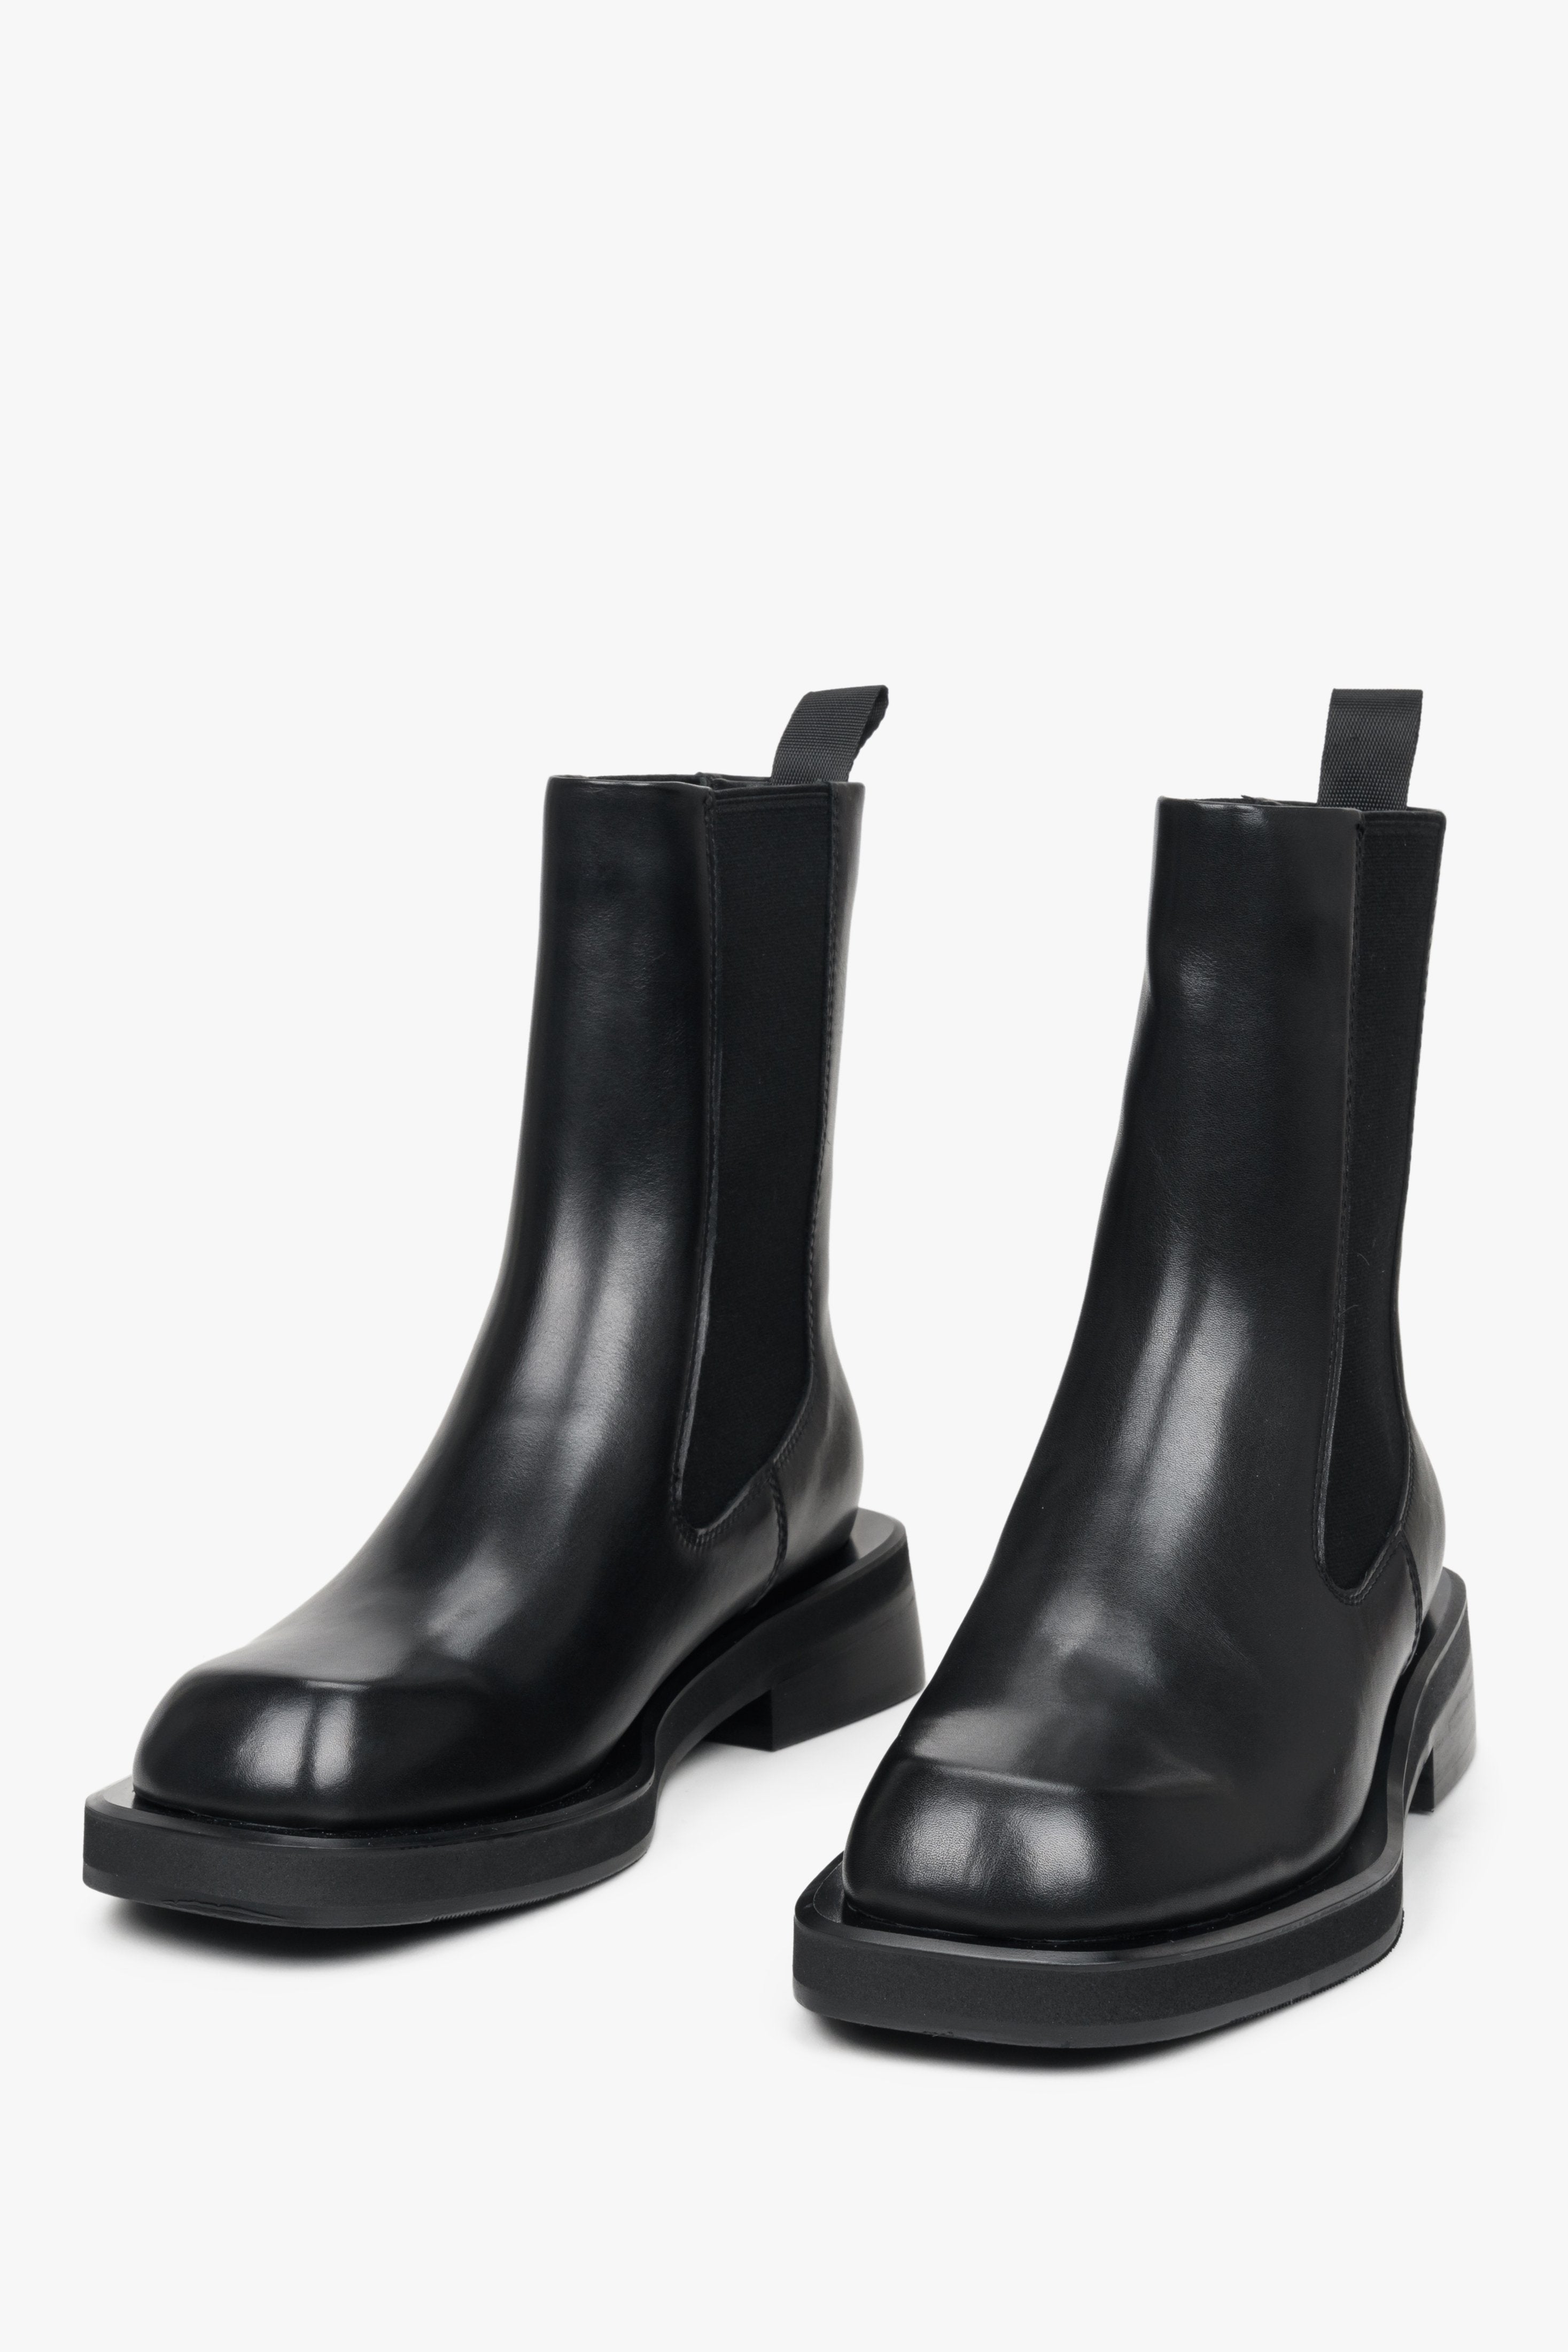 Damskie, czarne sztyblety ze skóry naturalnej marki Estro - zbliżenie na czubek obuwia.